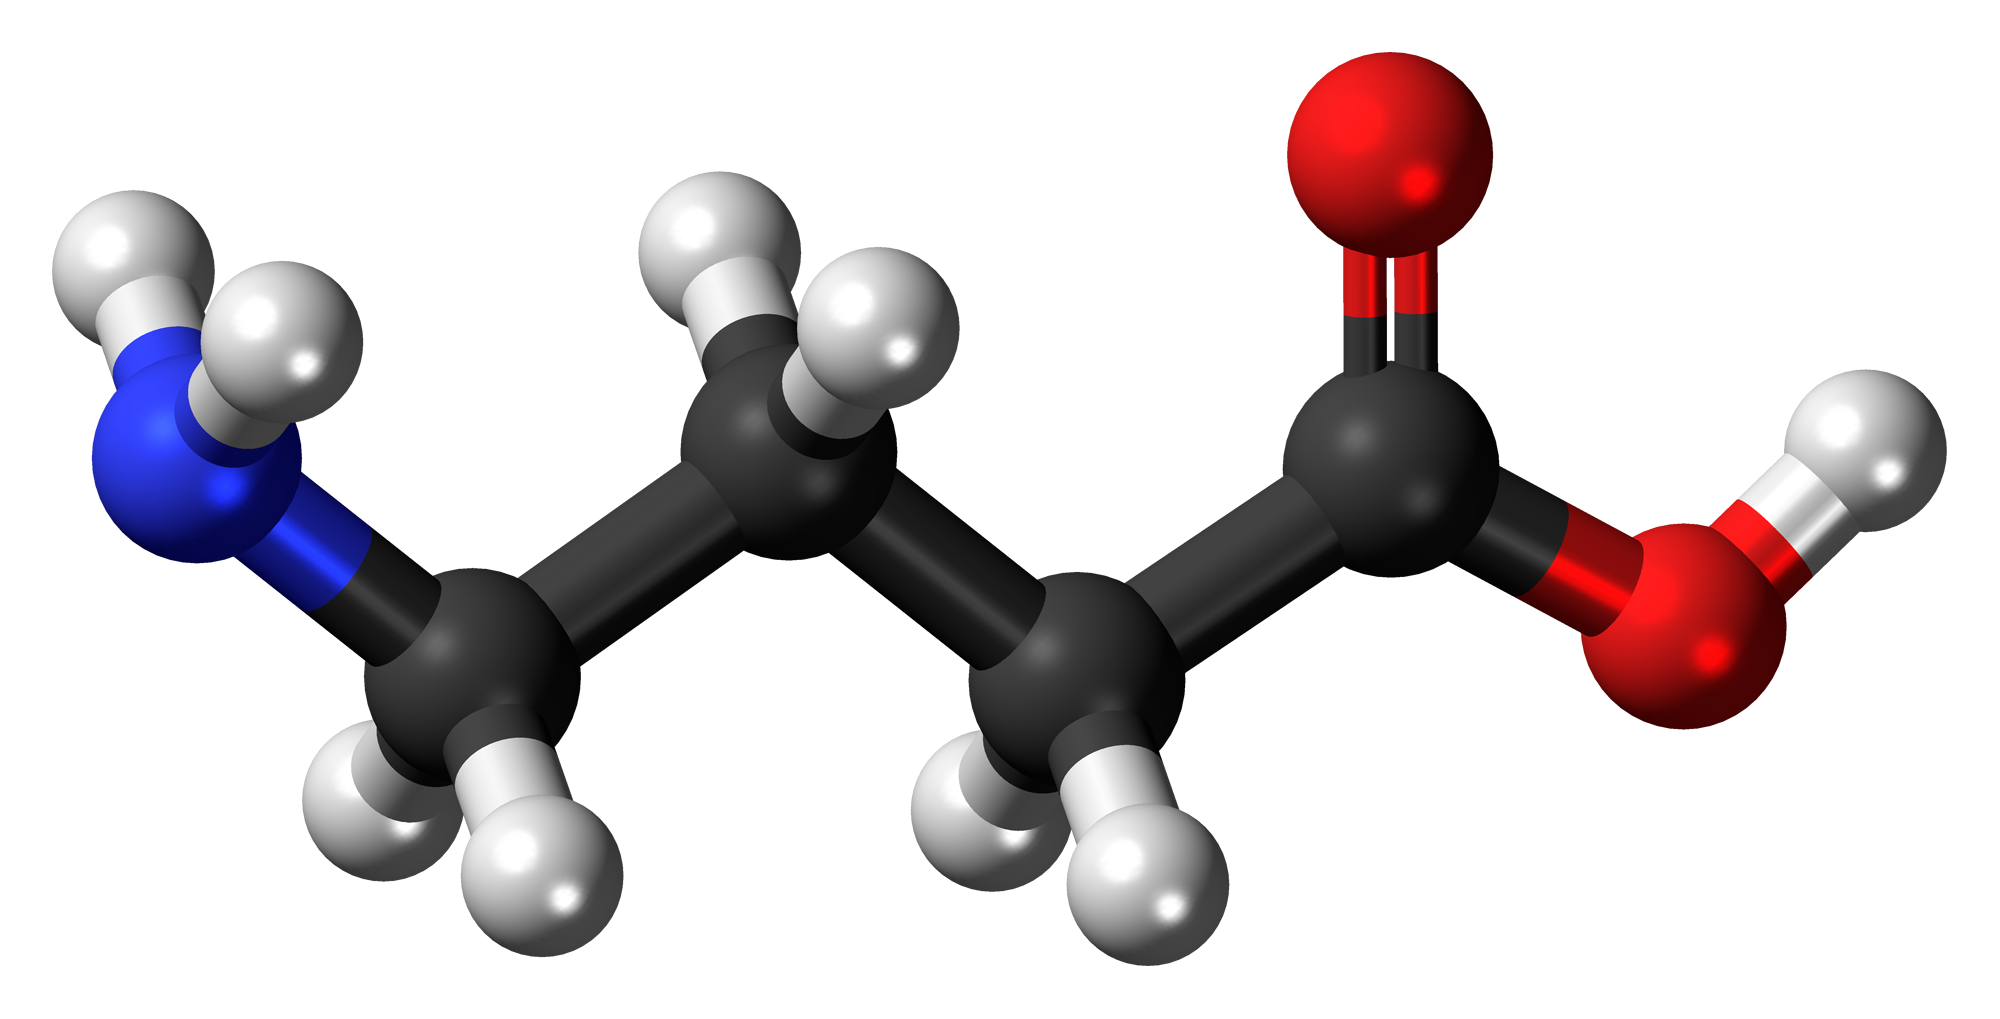 Kwas γ-aminomasłowy lub kwas gamma-aminomasłowy, znany powszechnie pod skrótem GABA, jest najbardziej rozpowszechnioną postacią kwasu γ-aminomasłowego.